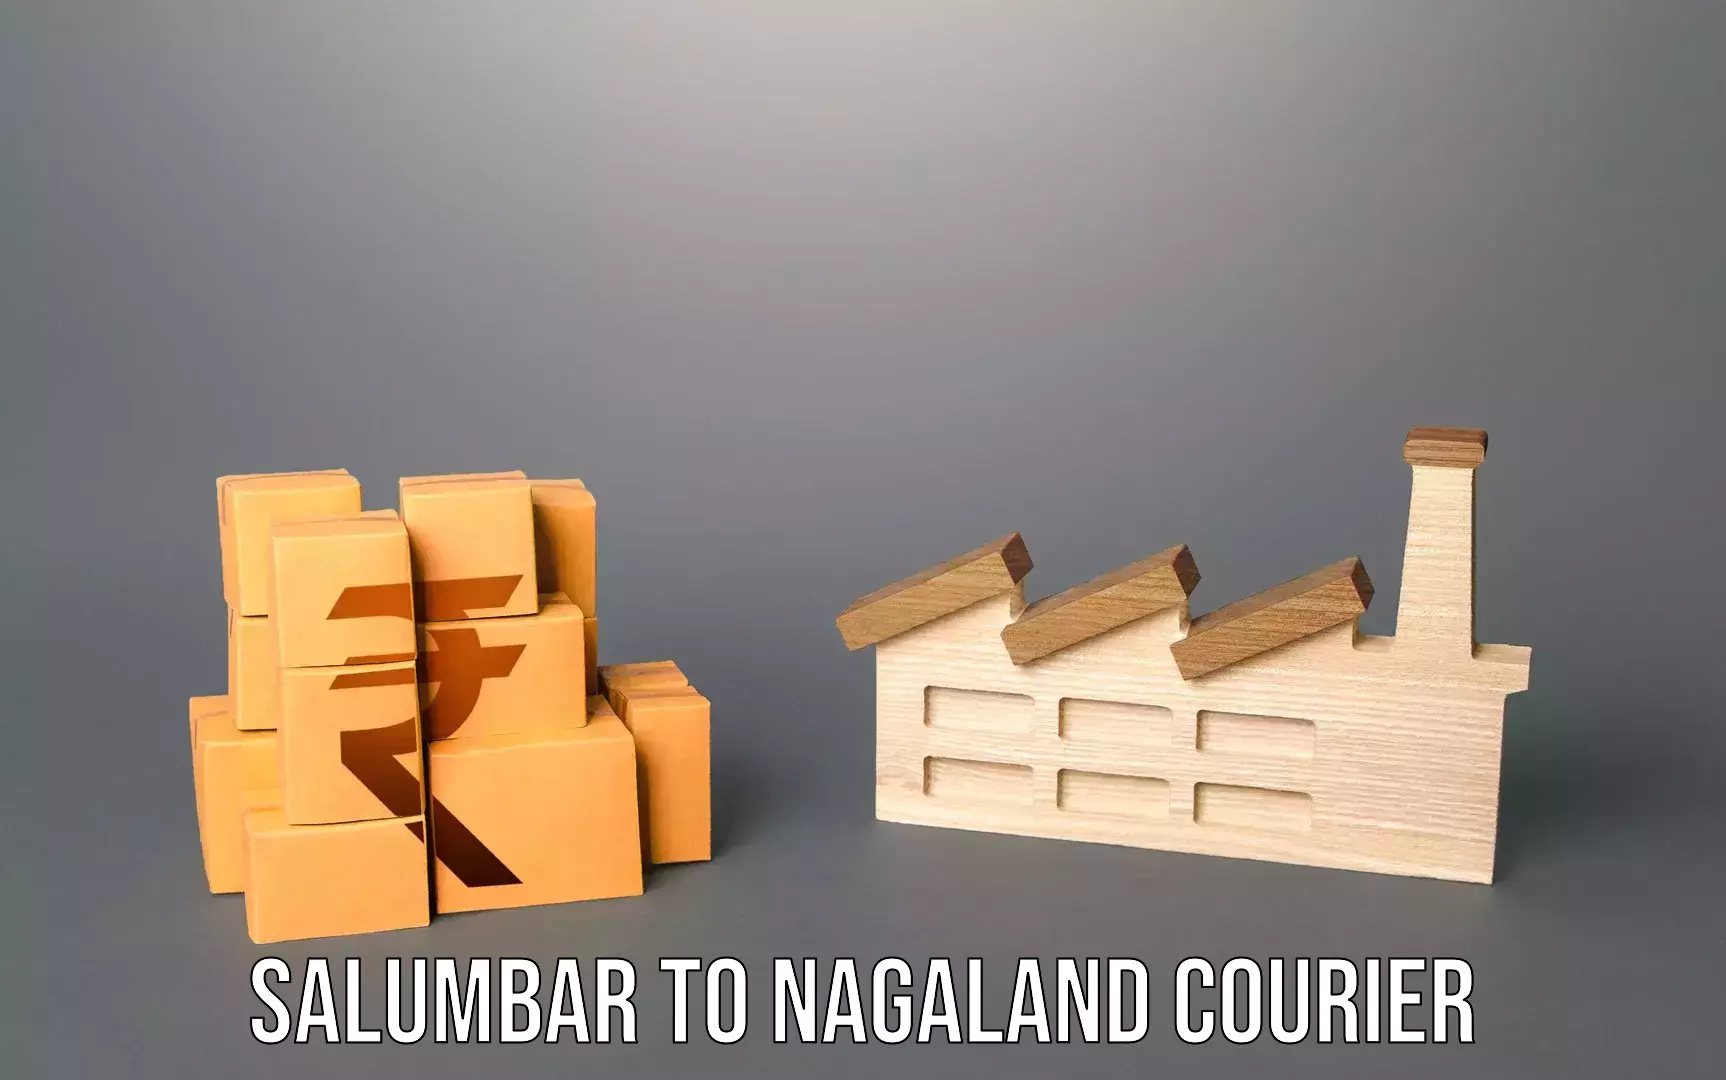 Luggage dispatch service Salumbar to Nagaland